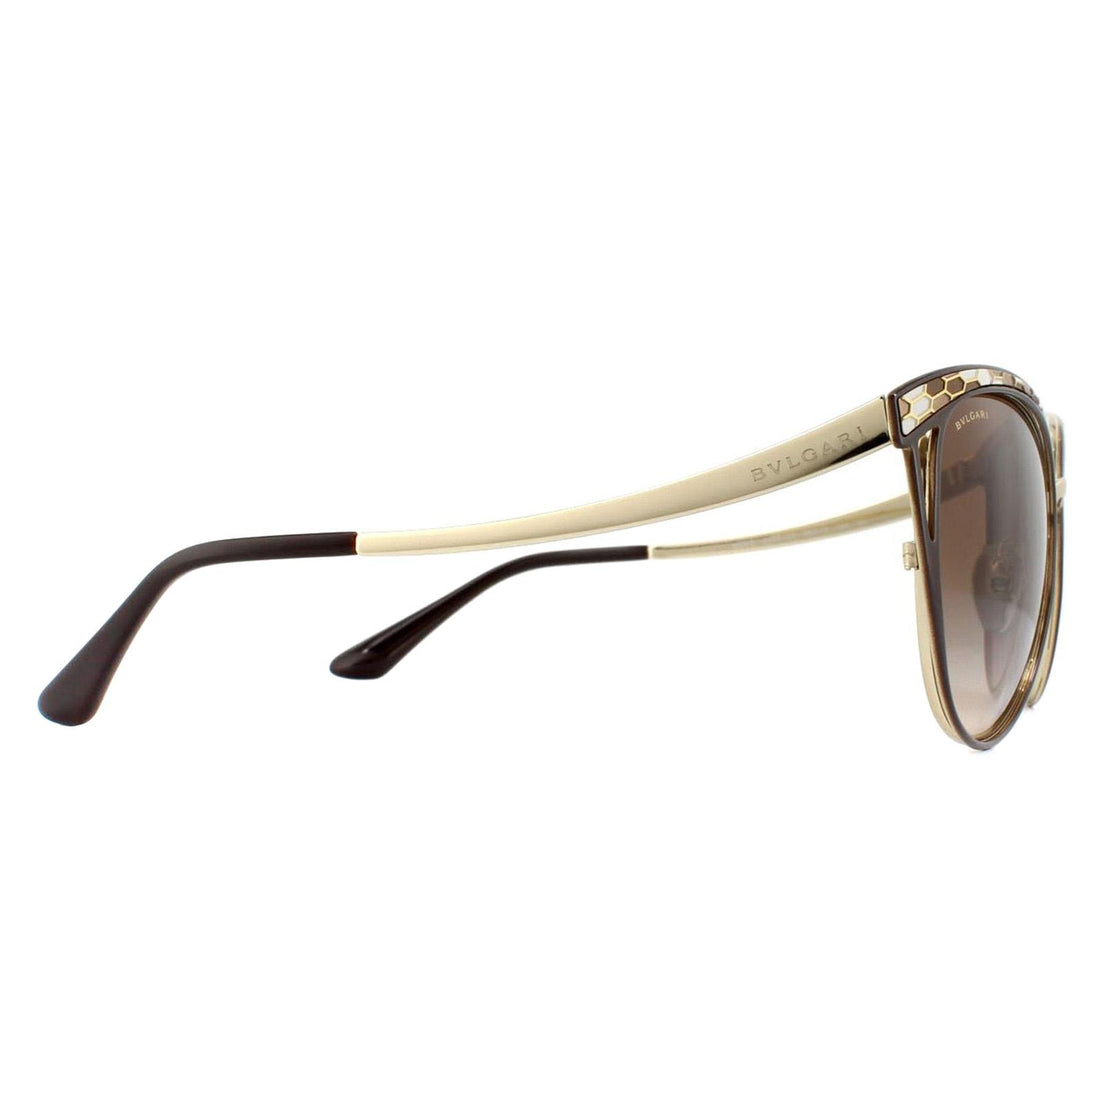 Bvlgari Sunglasses 6083 203013 Brown & Pale Gold Brown Gradient